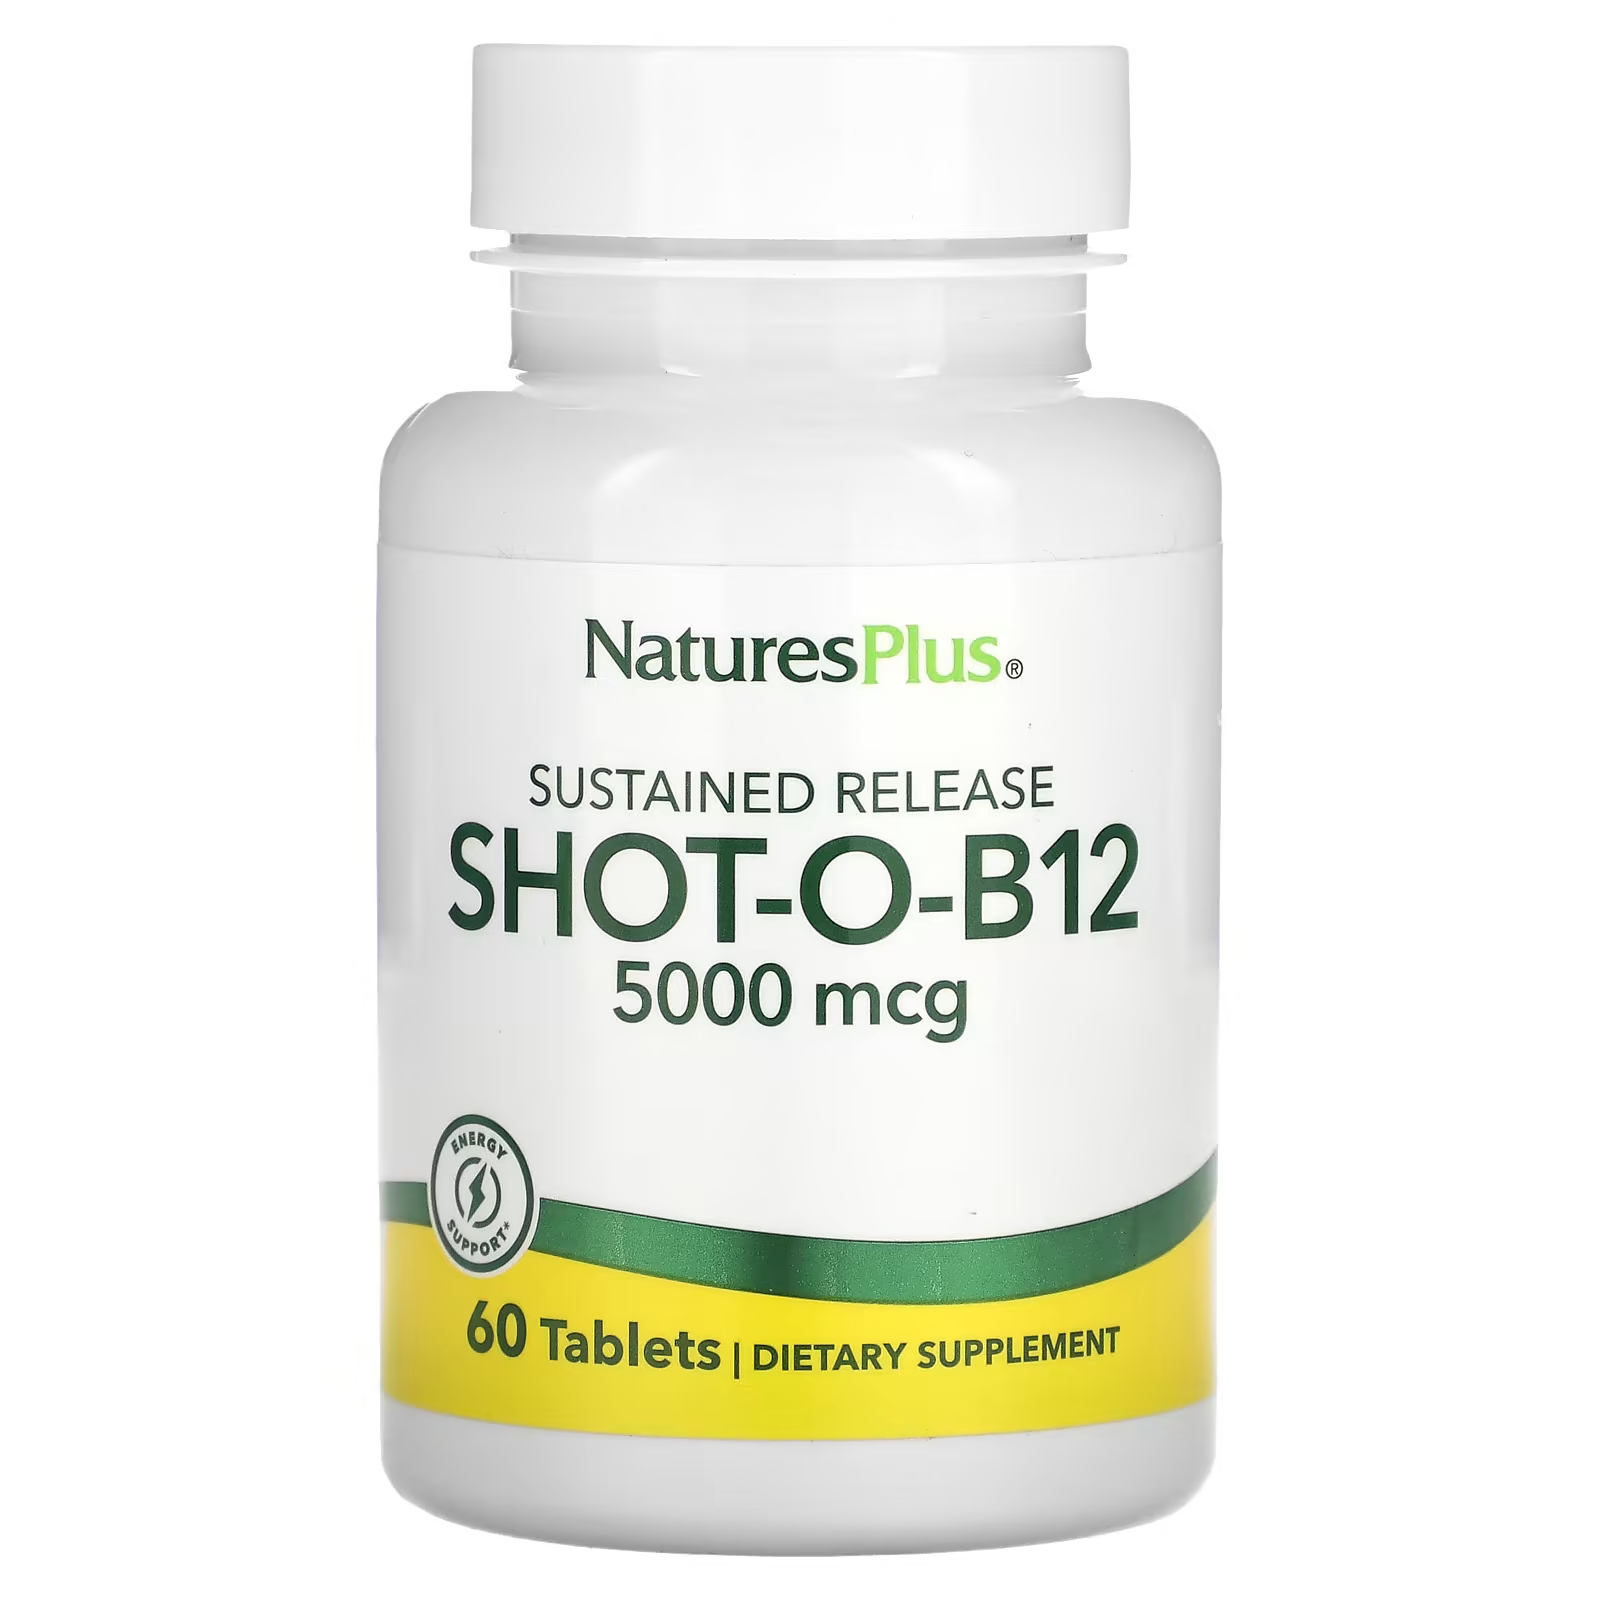 naturesplus shot o b12 5000 мкг 30 мягких таблеток Биологически активная добавка NaturesPlus, Shot-O-B12 с замедленным высвобождением, 5000 мкг., 60 таблеток